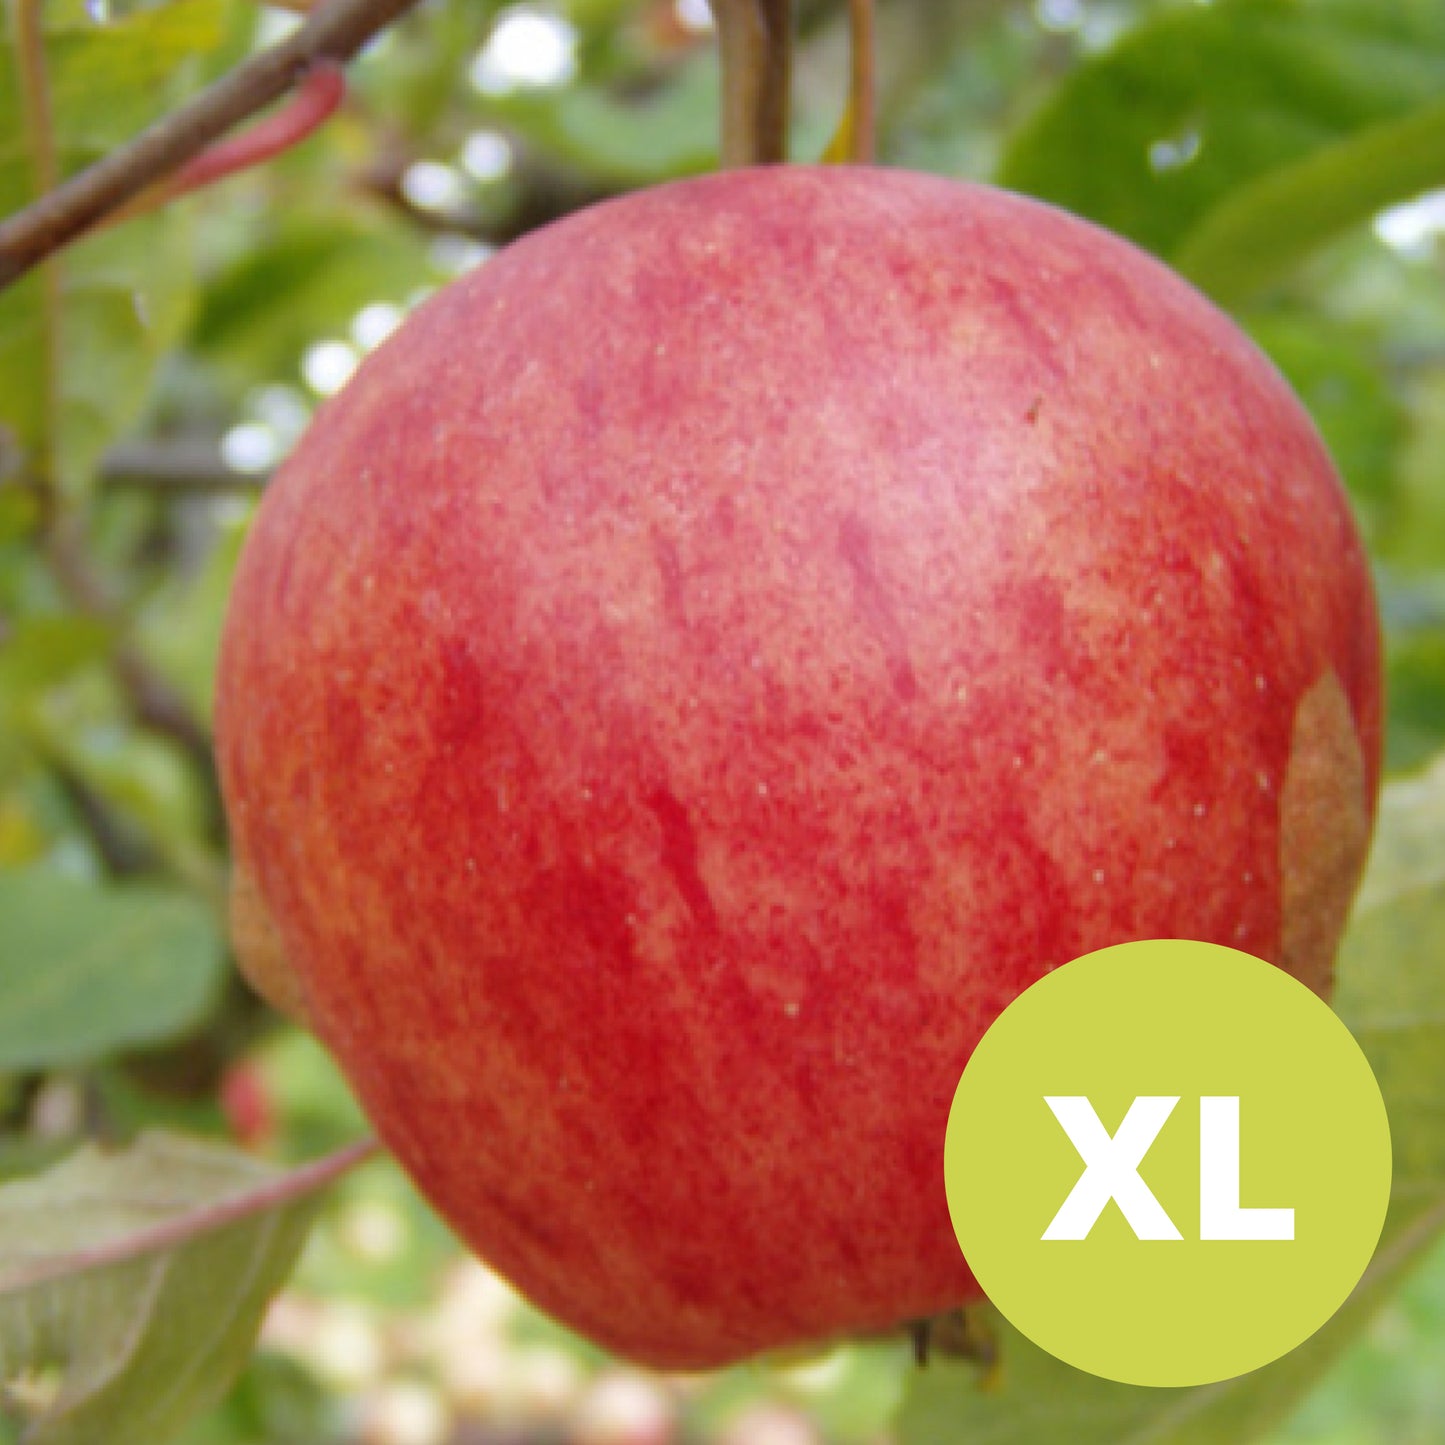 Katy / Katja – Large apple tree